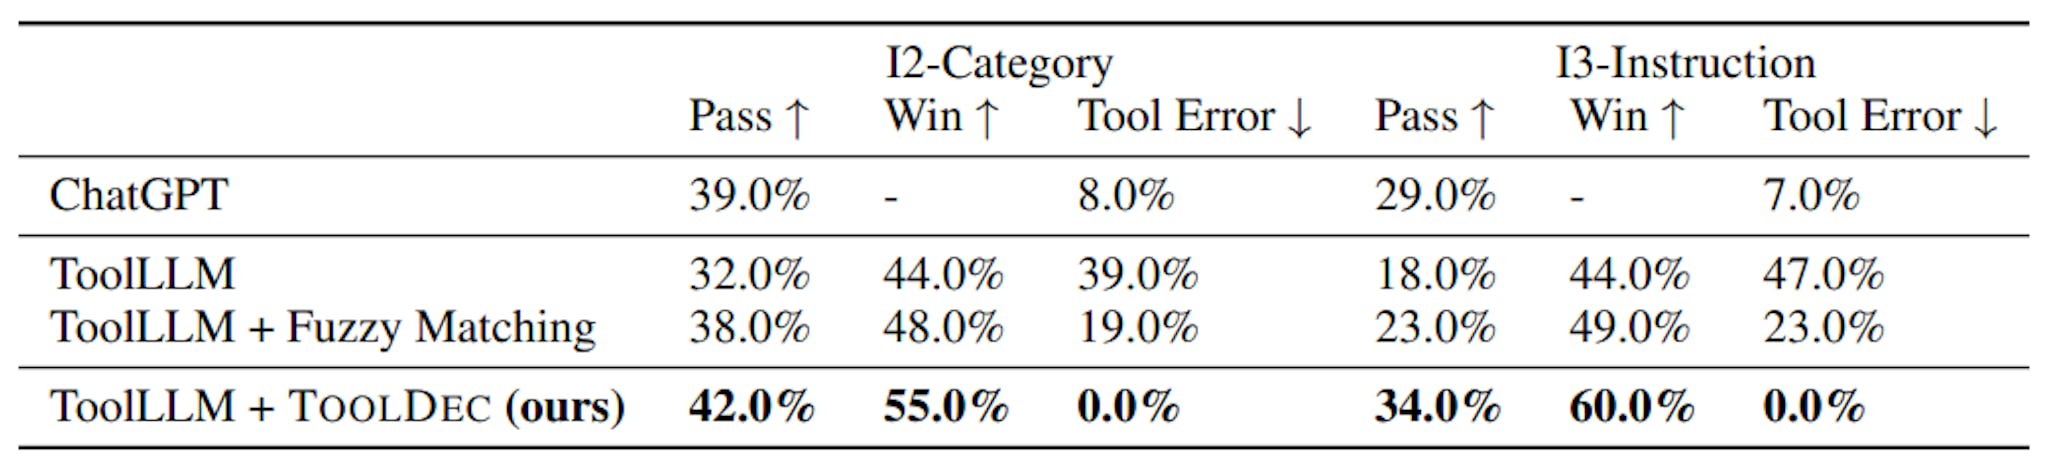 Tabla 3: Resultados de ToolEval. ToolLLM mejorado con TOOLDEC superó a ToolLLM en todas las métricas. TOOLDEC eliminó todos los errores de la herramienta e incluso pudo superar ligeramente a ChatGPT.